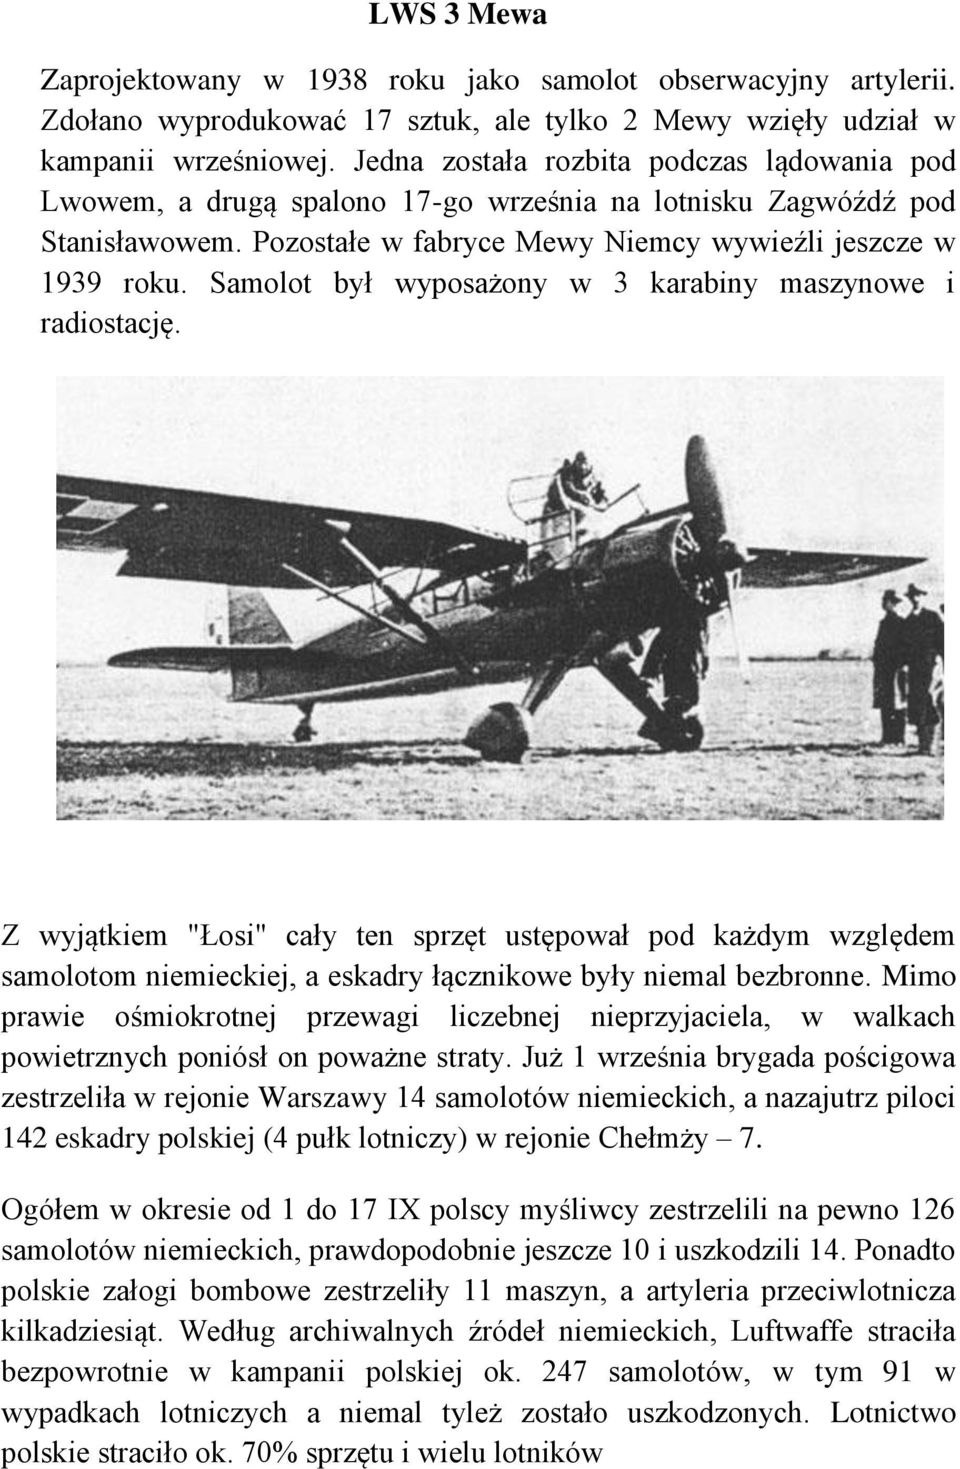 Samolot był wyposażony w 3 karabiny maszynowe i radiostację. Z wyjątkiem "Łosi" cały ten sprzęt ustępował pod każdym względem samolotom niemieckiej, a eskadry łącznikowe były niemal bezbronne.